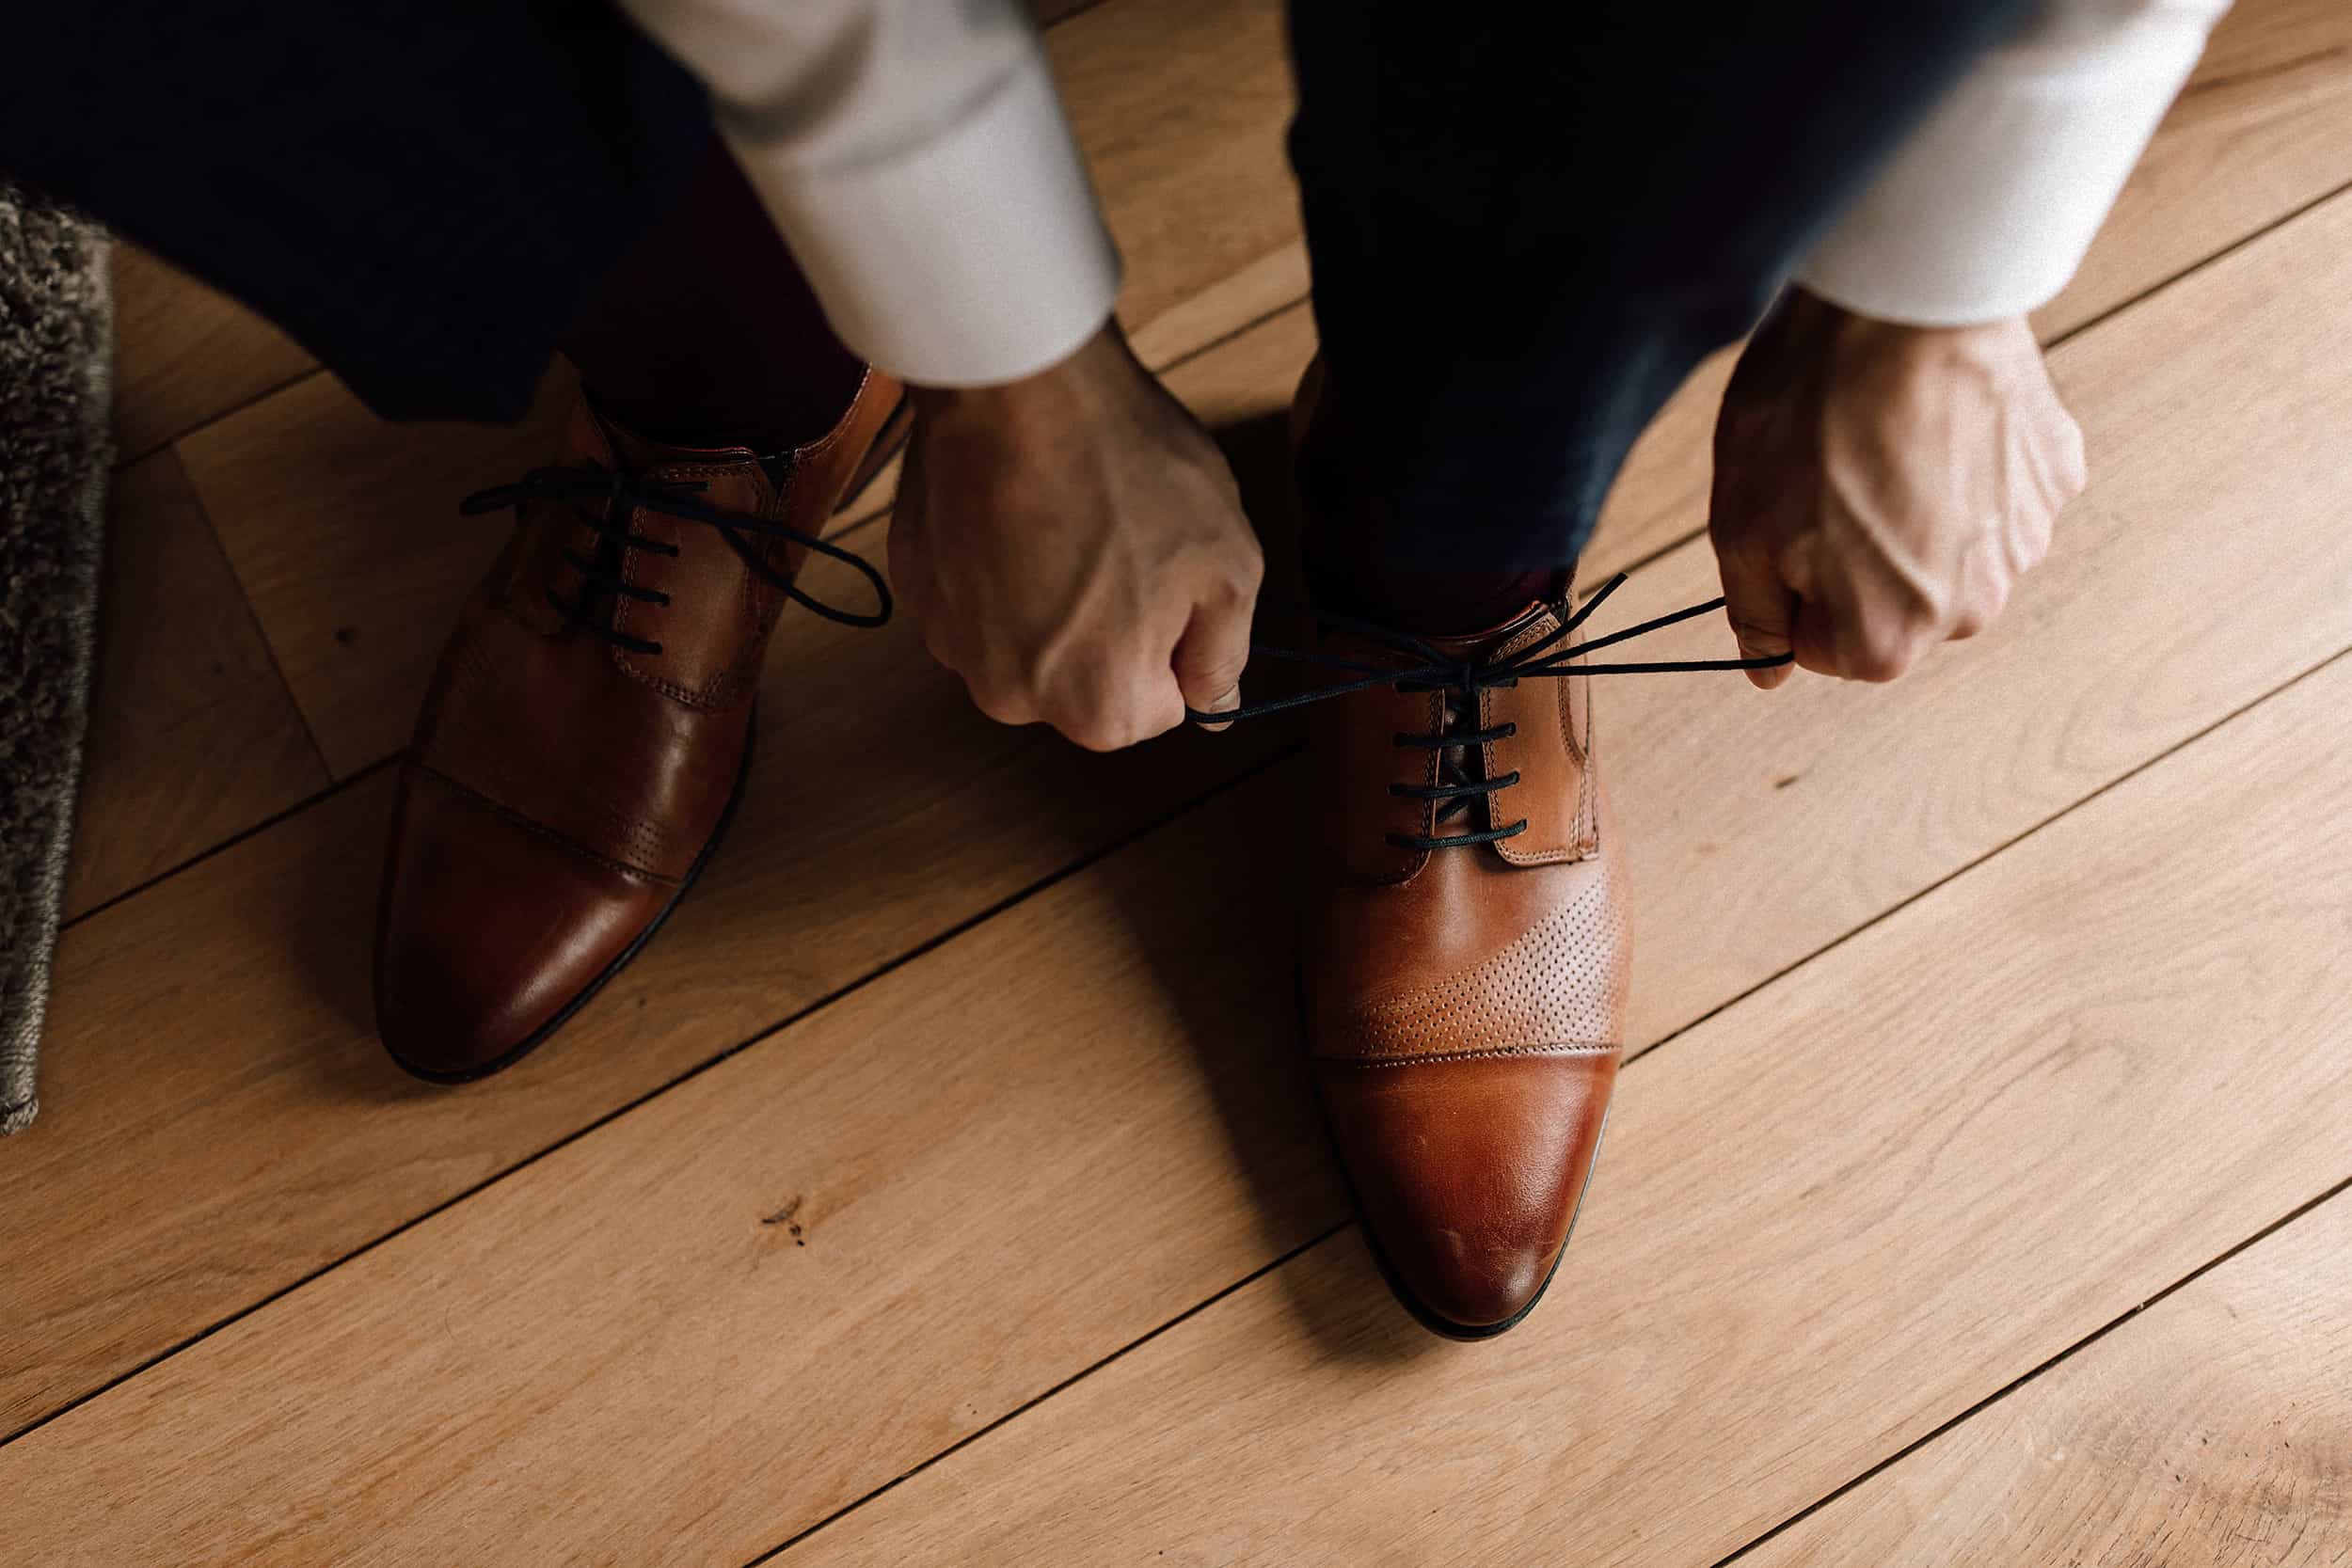 Der Bräutigam bindet sich beim Getting Ready seine braunen Schuhe